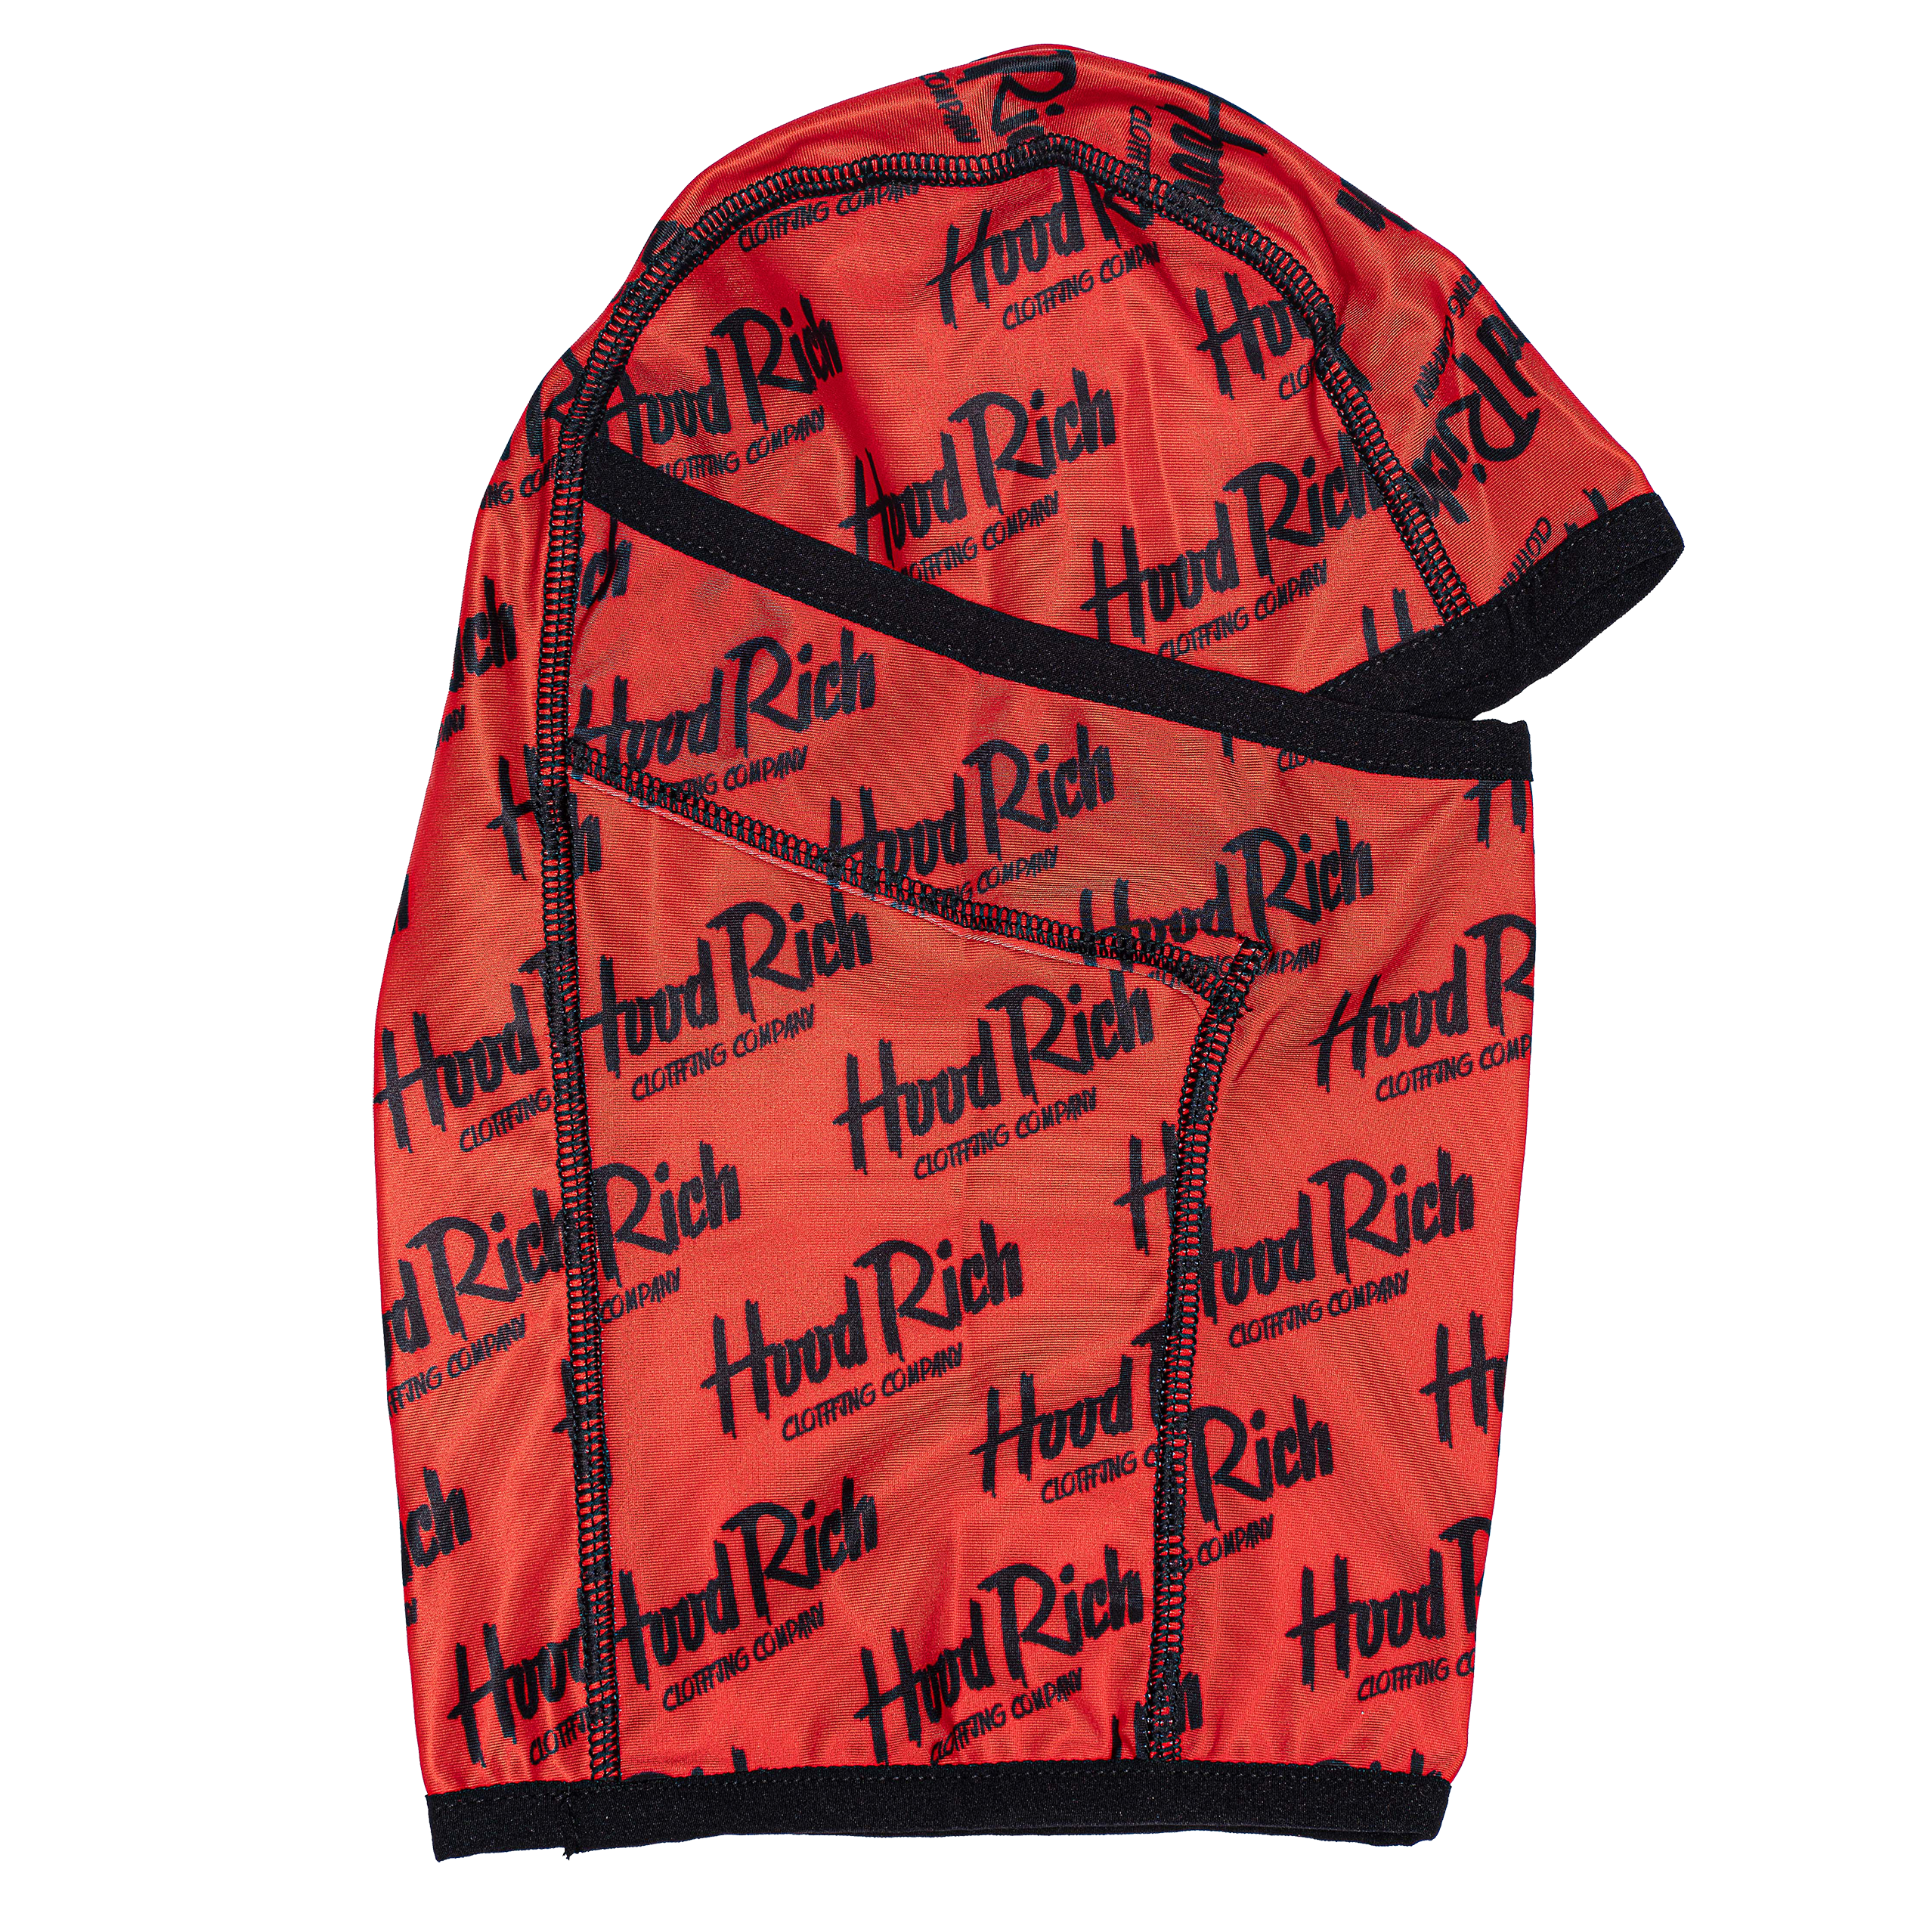 Red HoodRich “Pooh Shiesty” Ski Mask